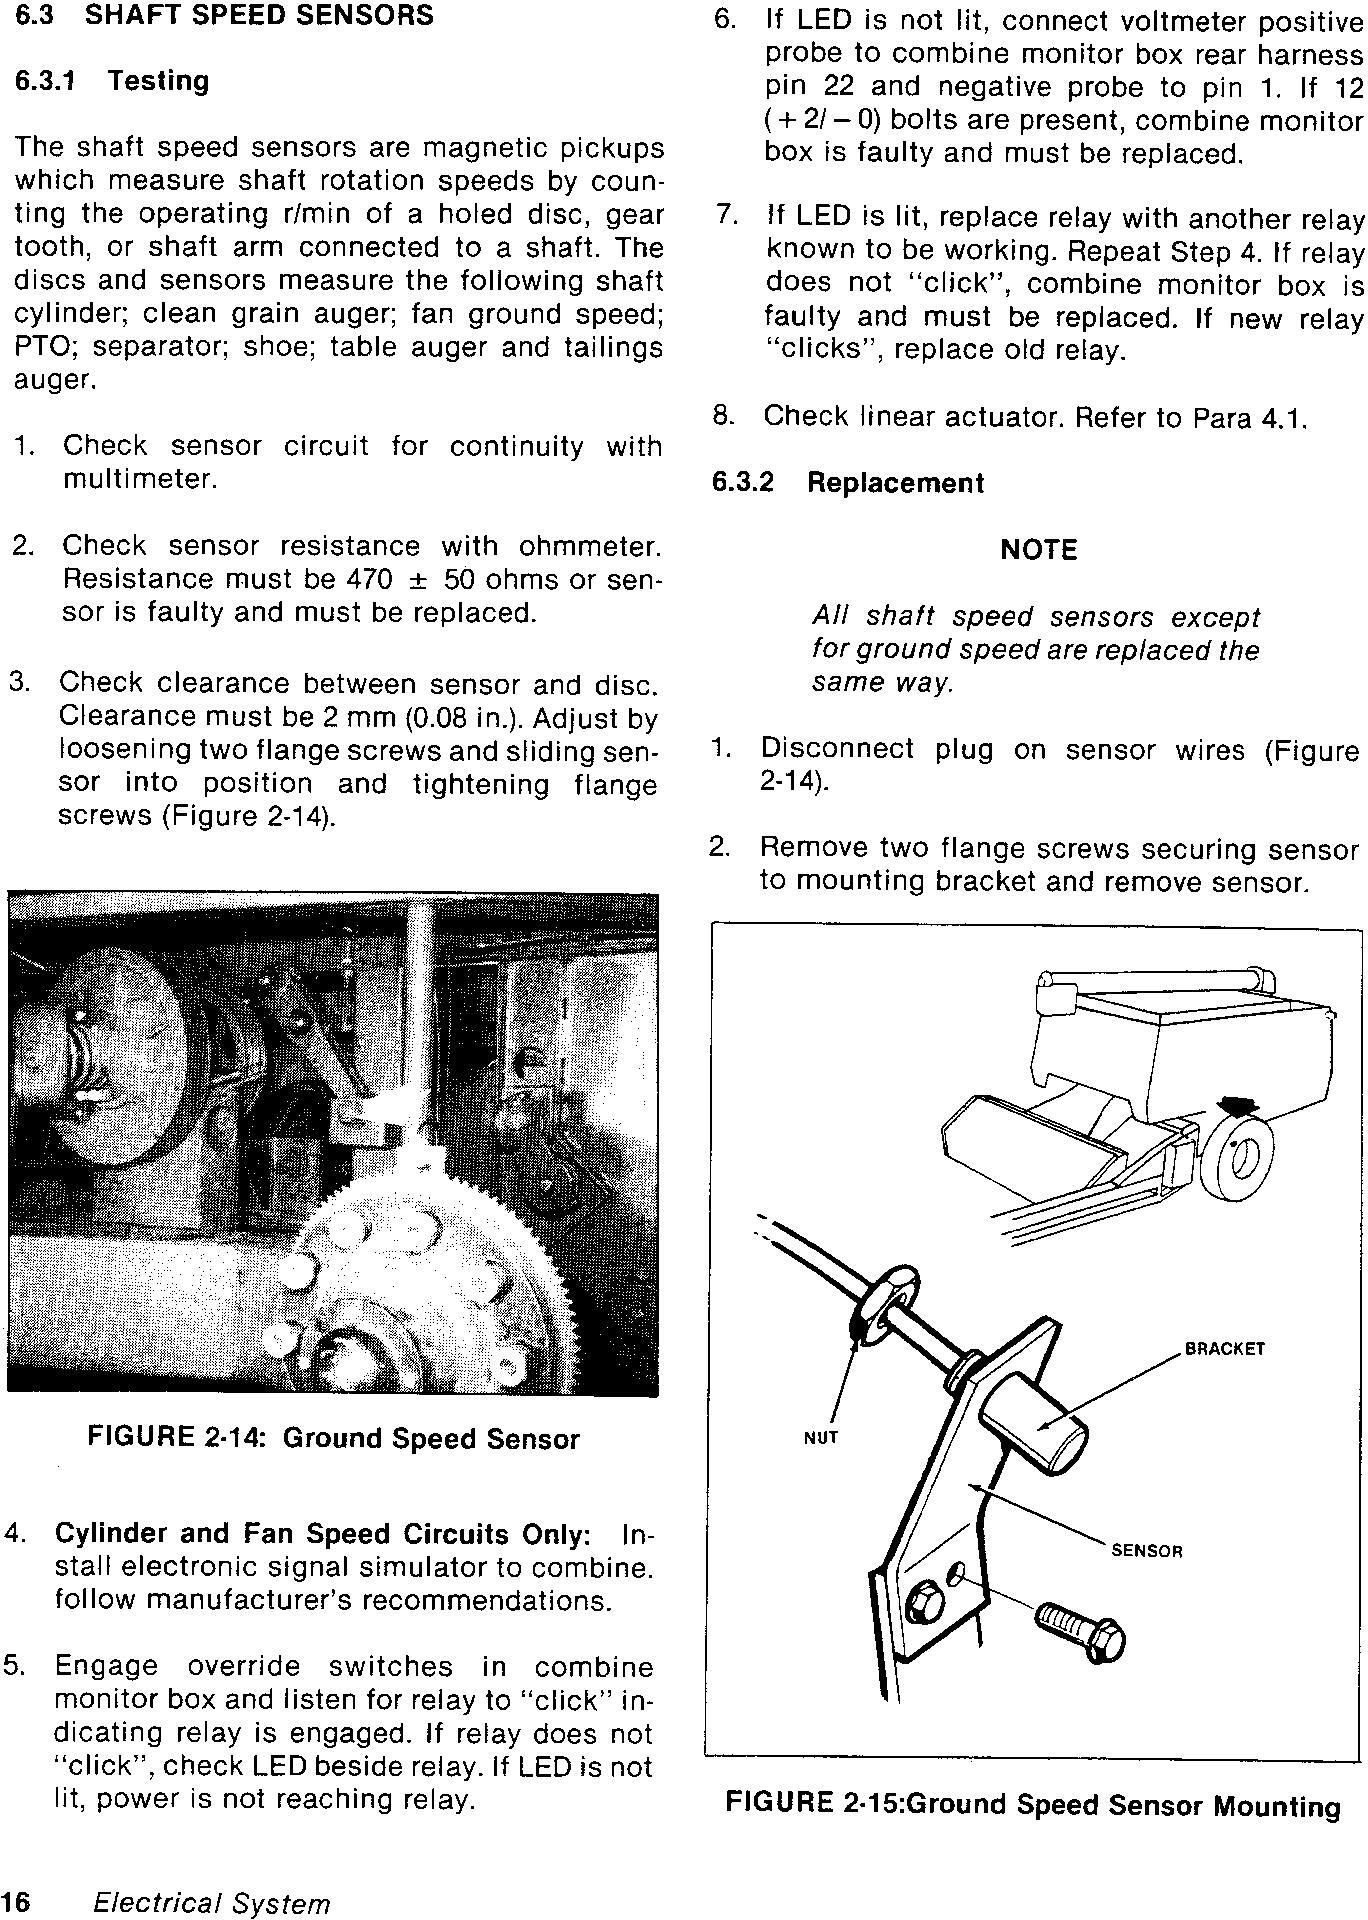 New Holland Versatile 2000 Combine (1985) Service Manual - 2